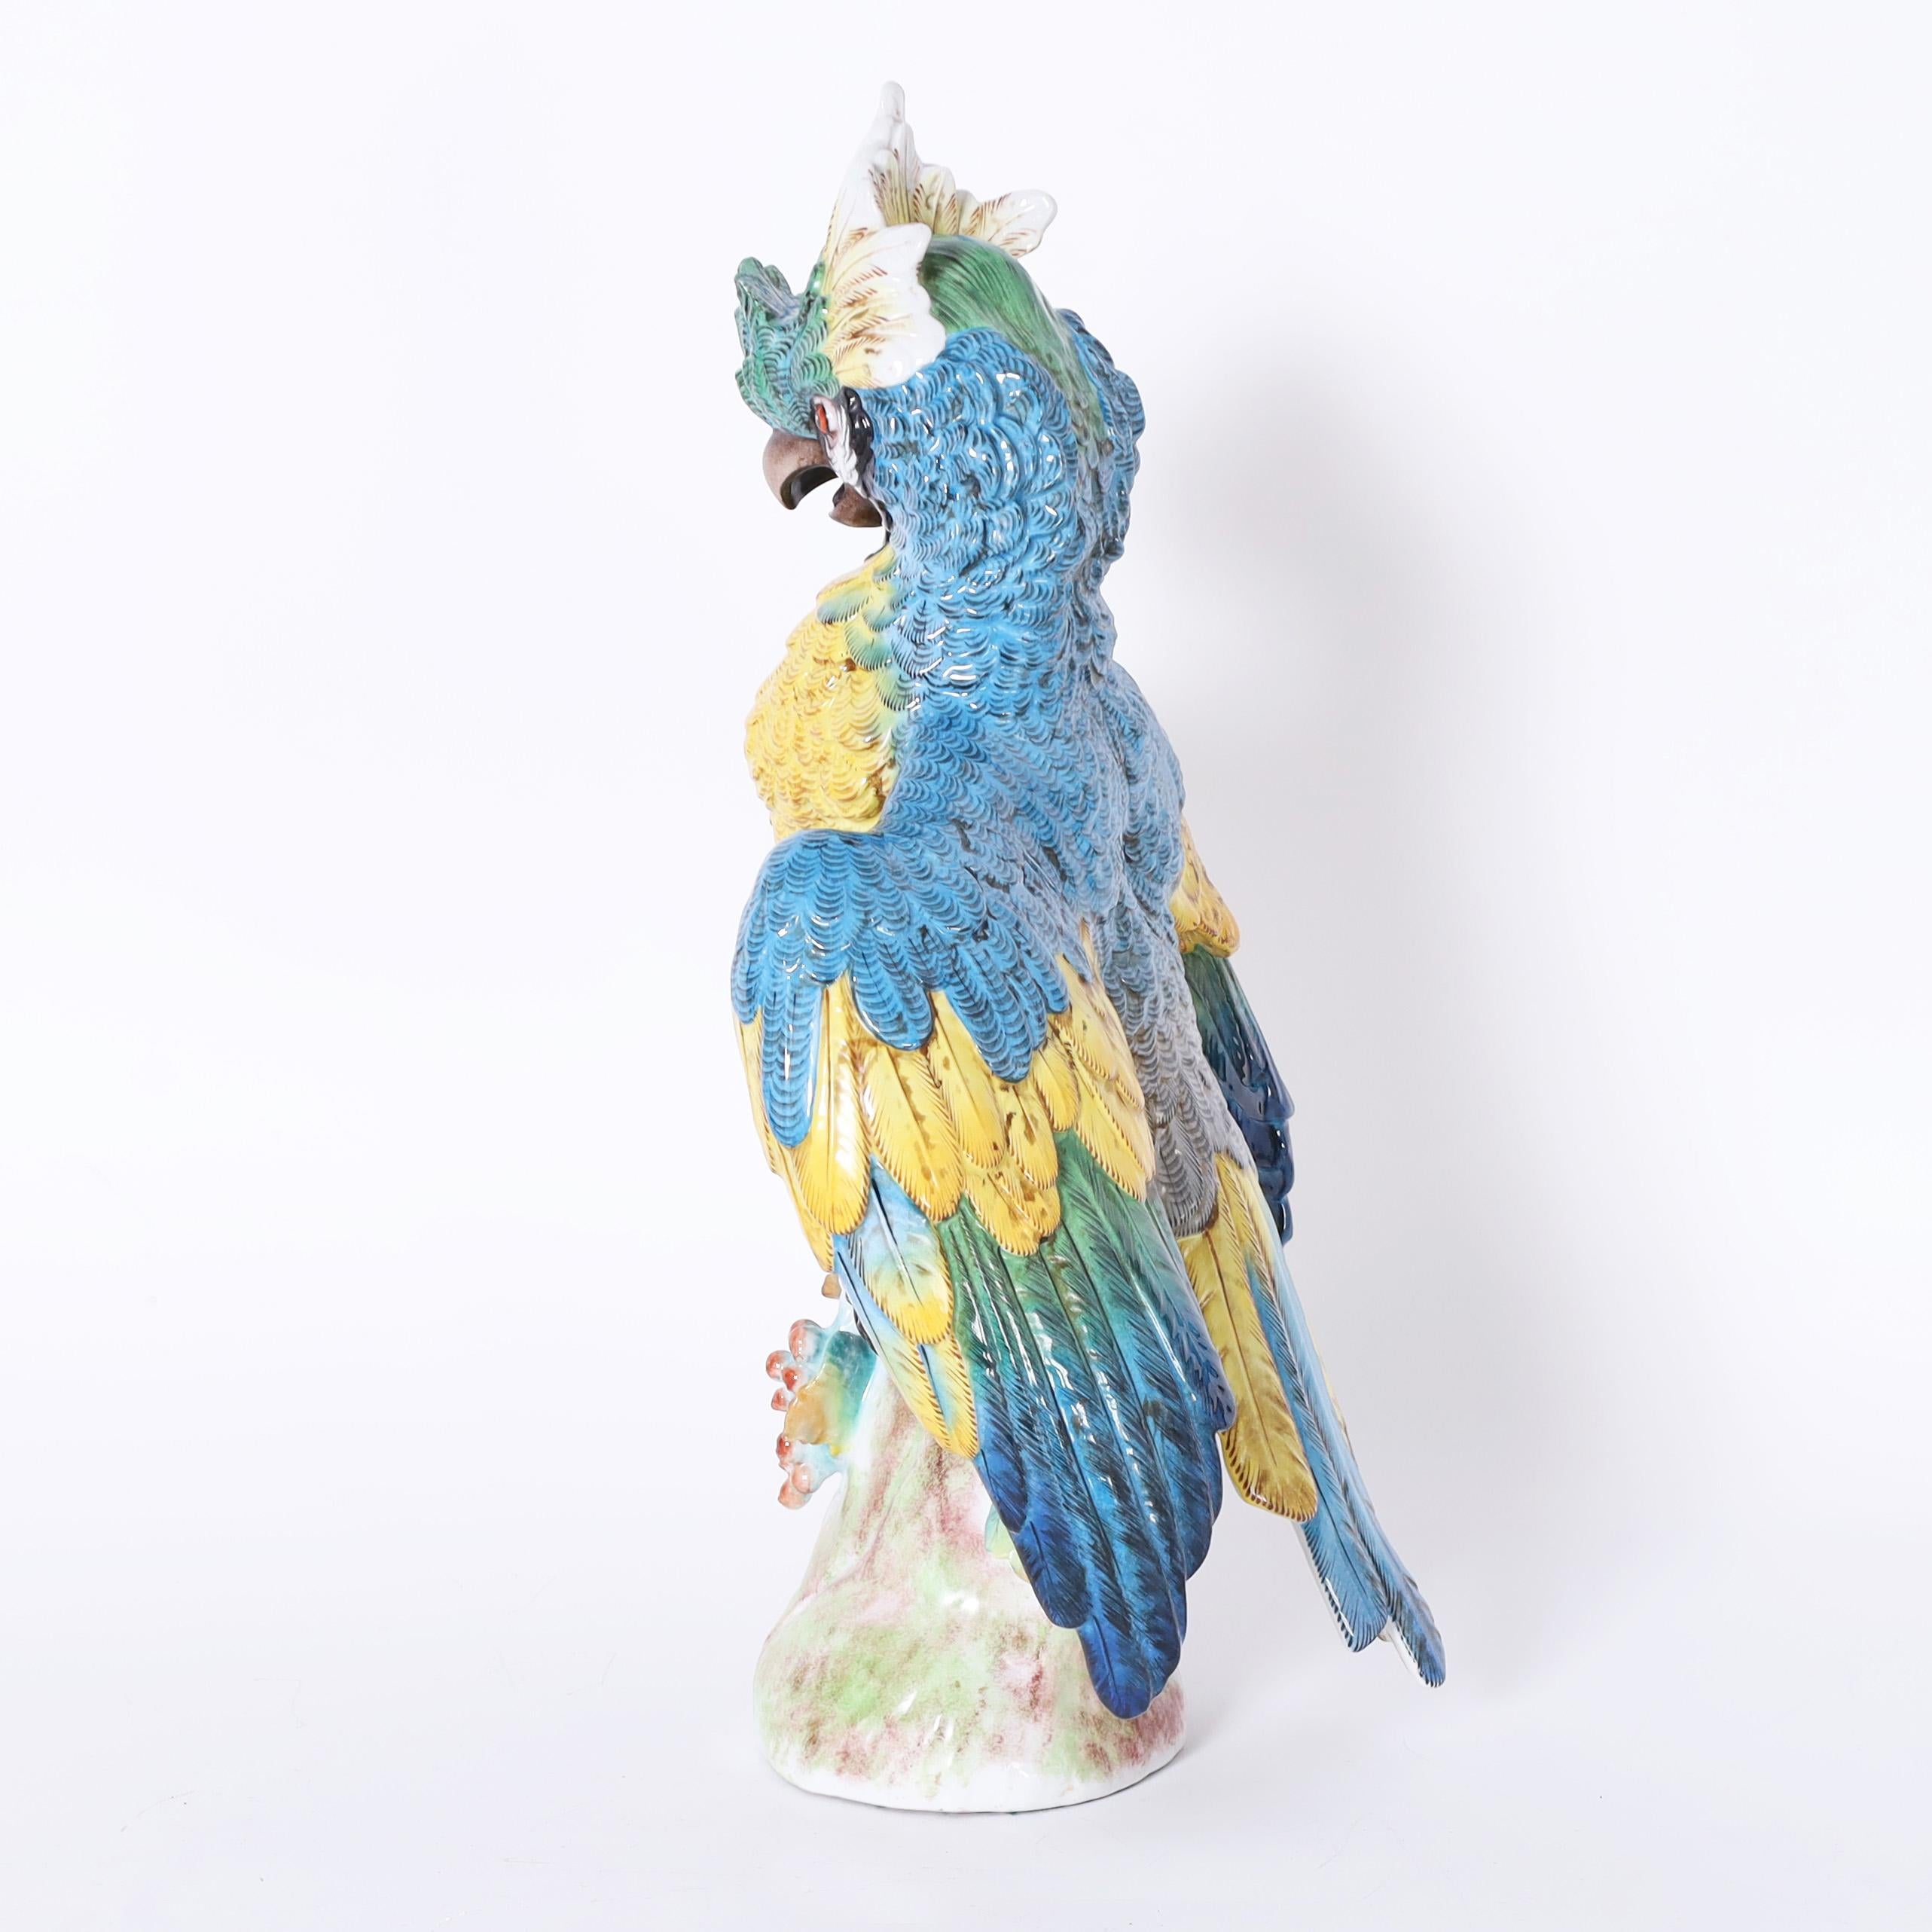 Perroquet grandeur nature en porcelaine décoré à la main dans des couleurs tropicales vives, émaillé et perché sur un tronc d'arbre. Signé avec des flèches croisées au dos.